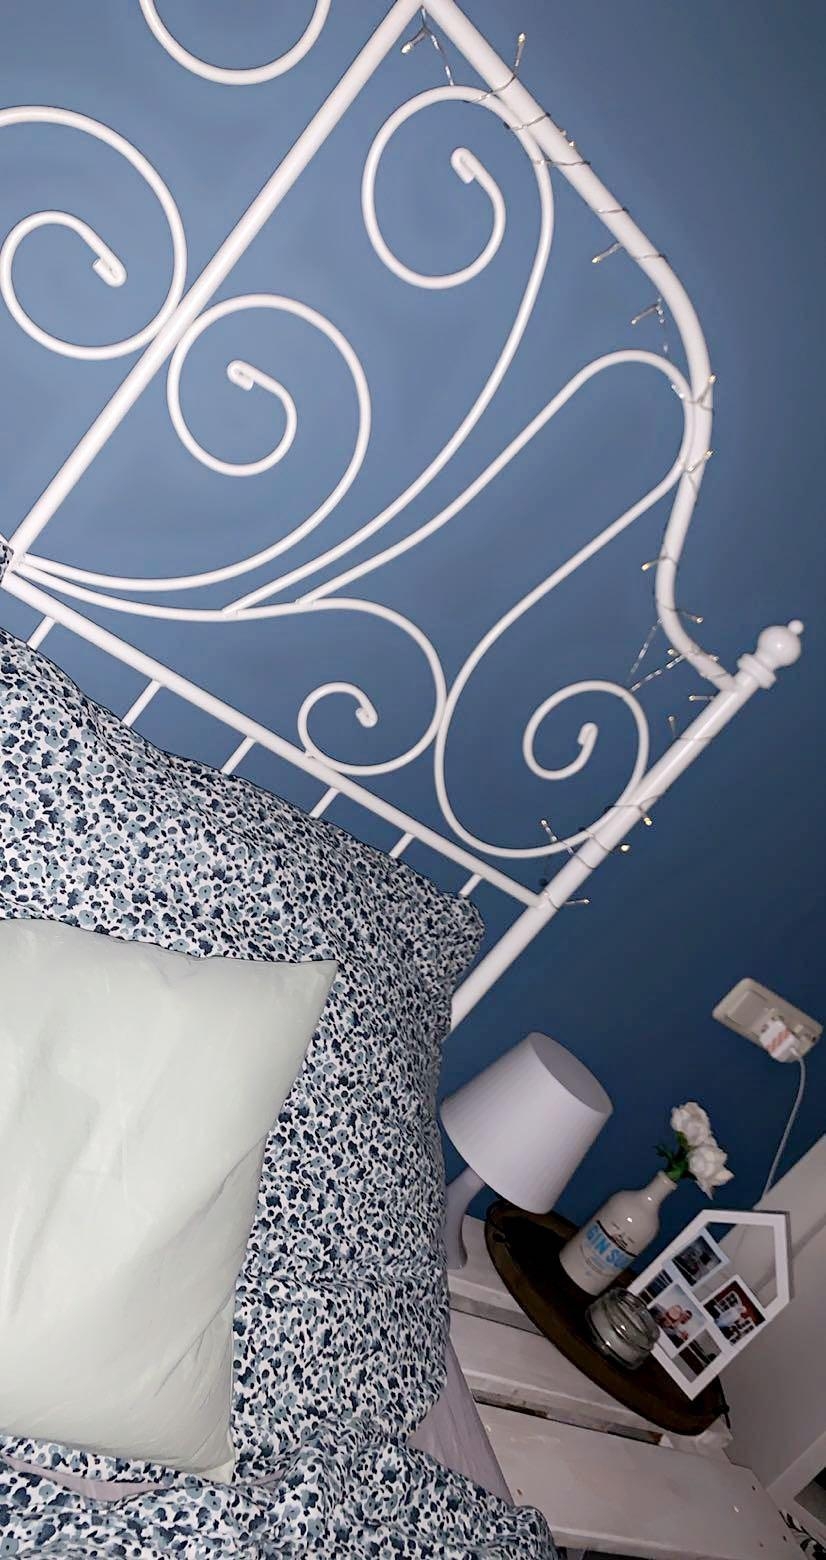 Die blaue Wand hinter dem Kopfteil des Betts war mit die beste Entscheidung in meiner Wohnung! 💙